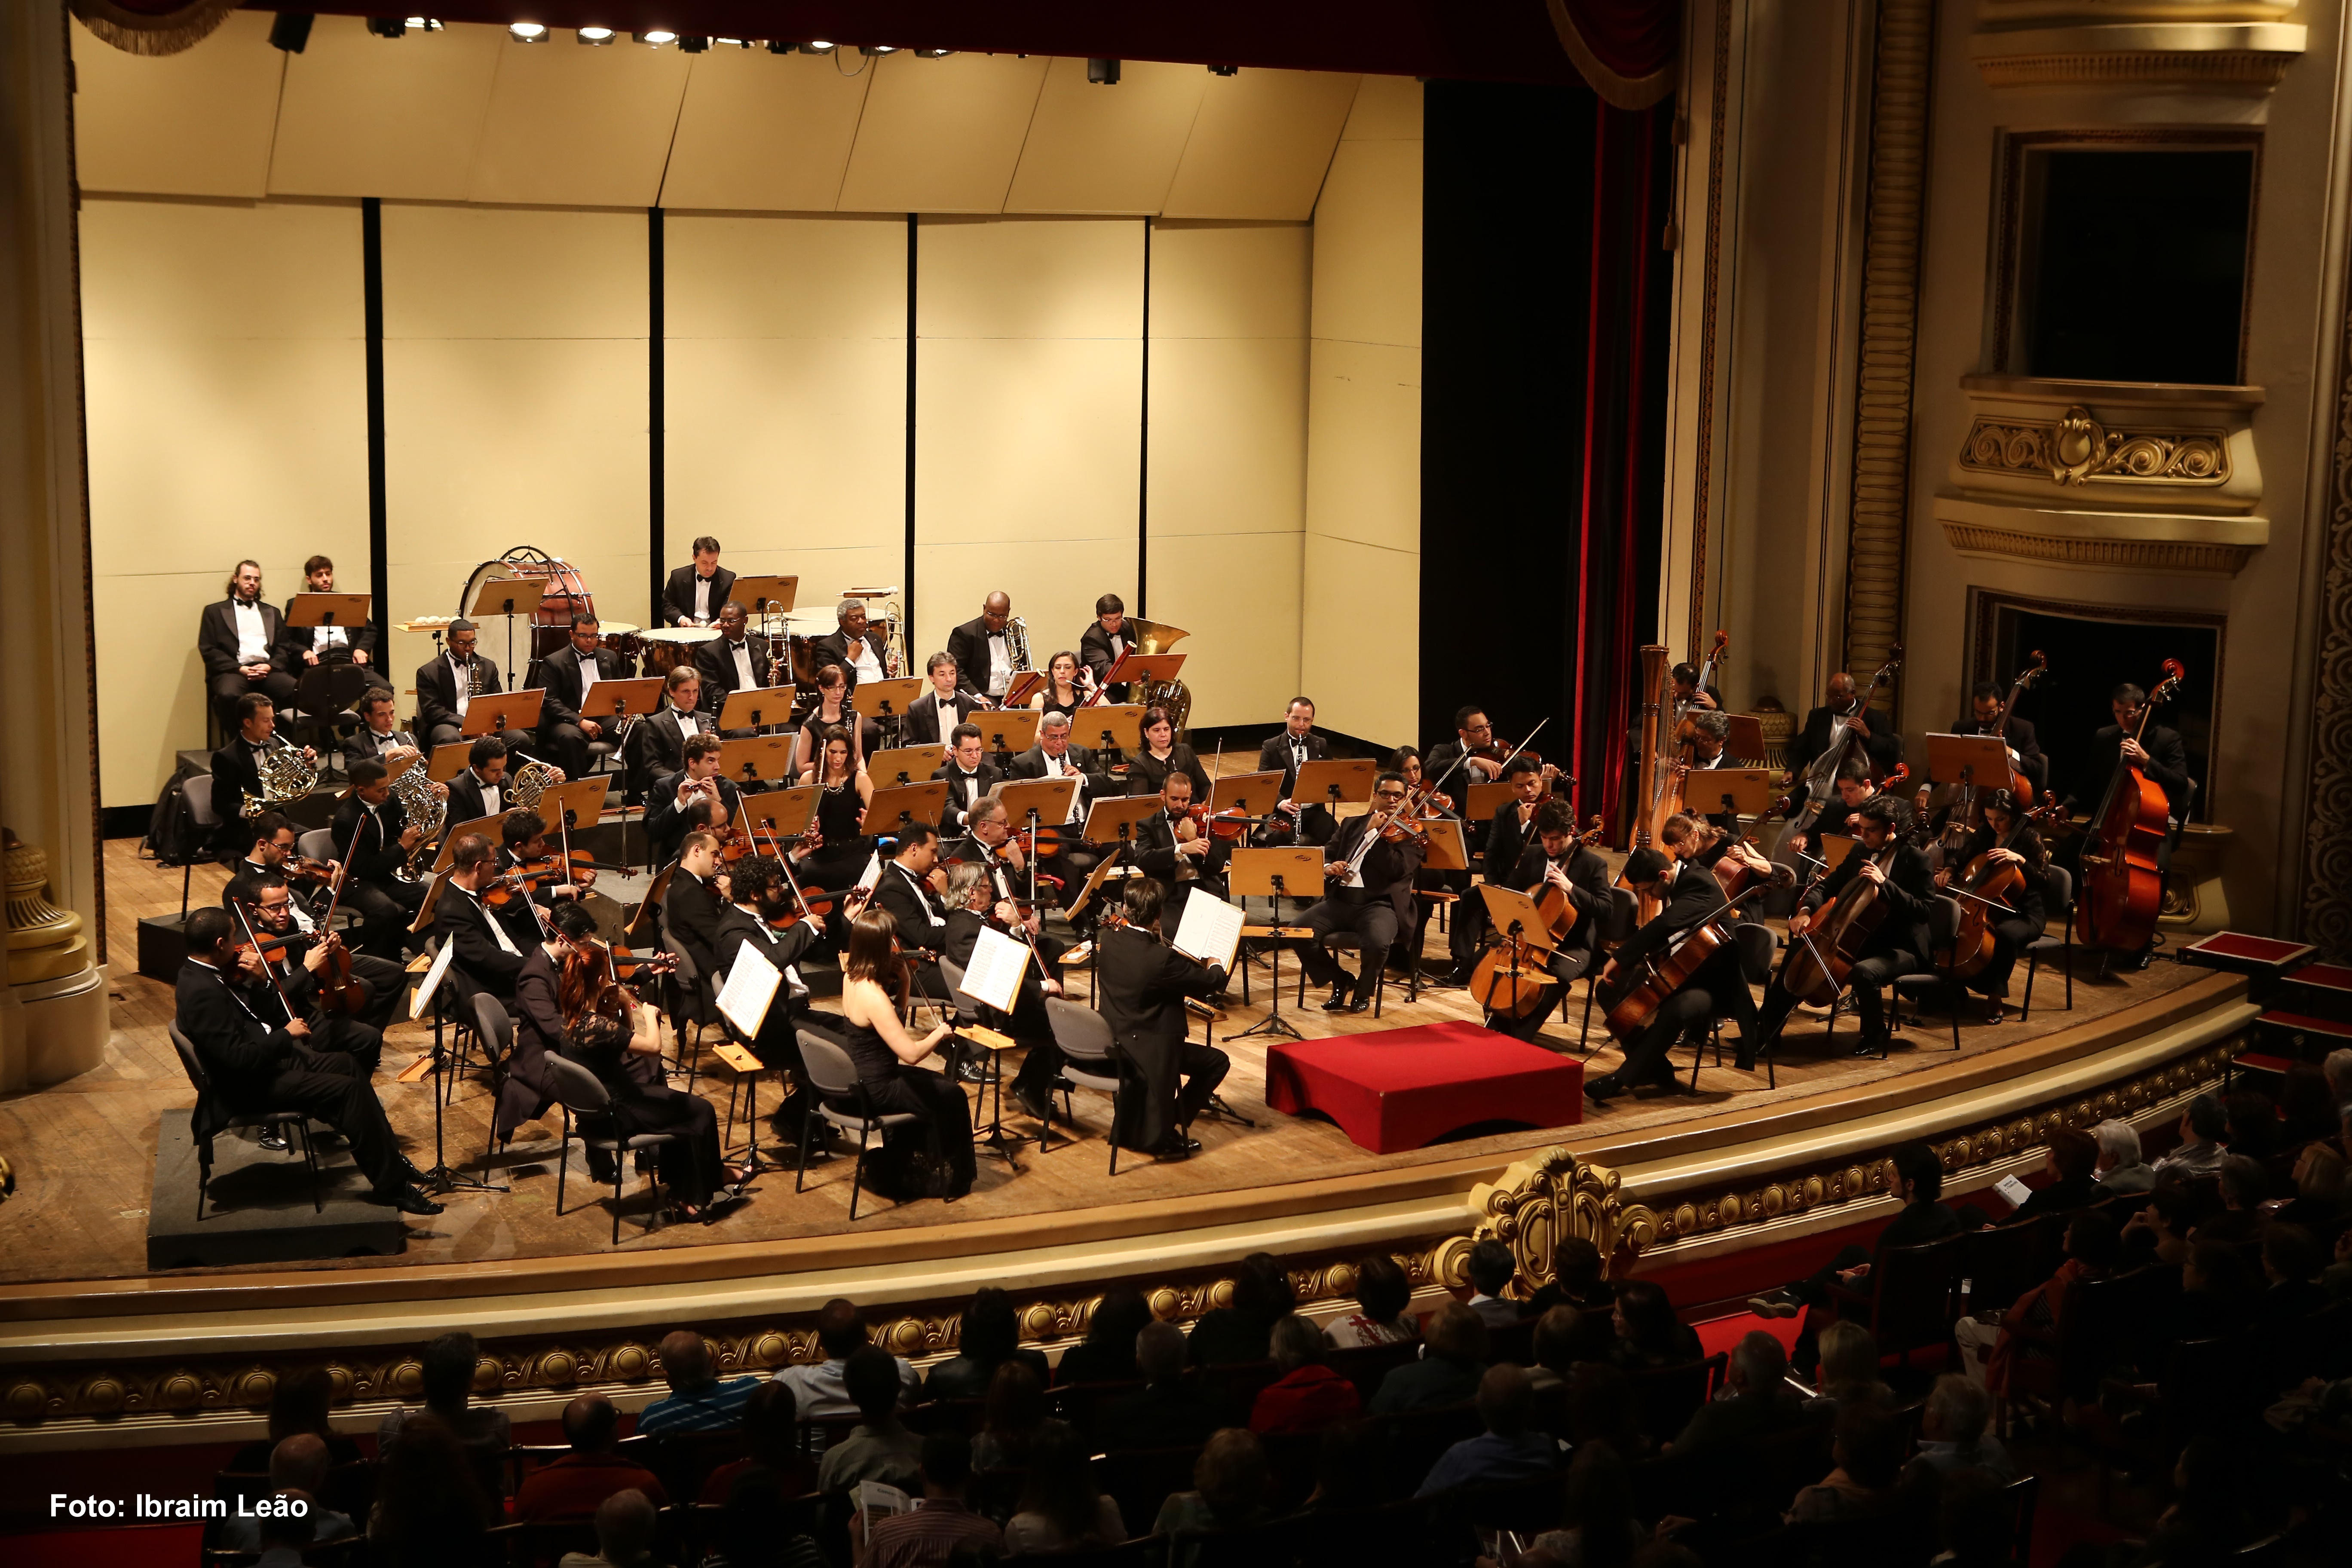 Orquestra Sinfônica de Ribeirão Preto apresentará composições de Mozart (Foto: Ibraim Leão)